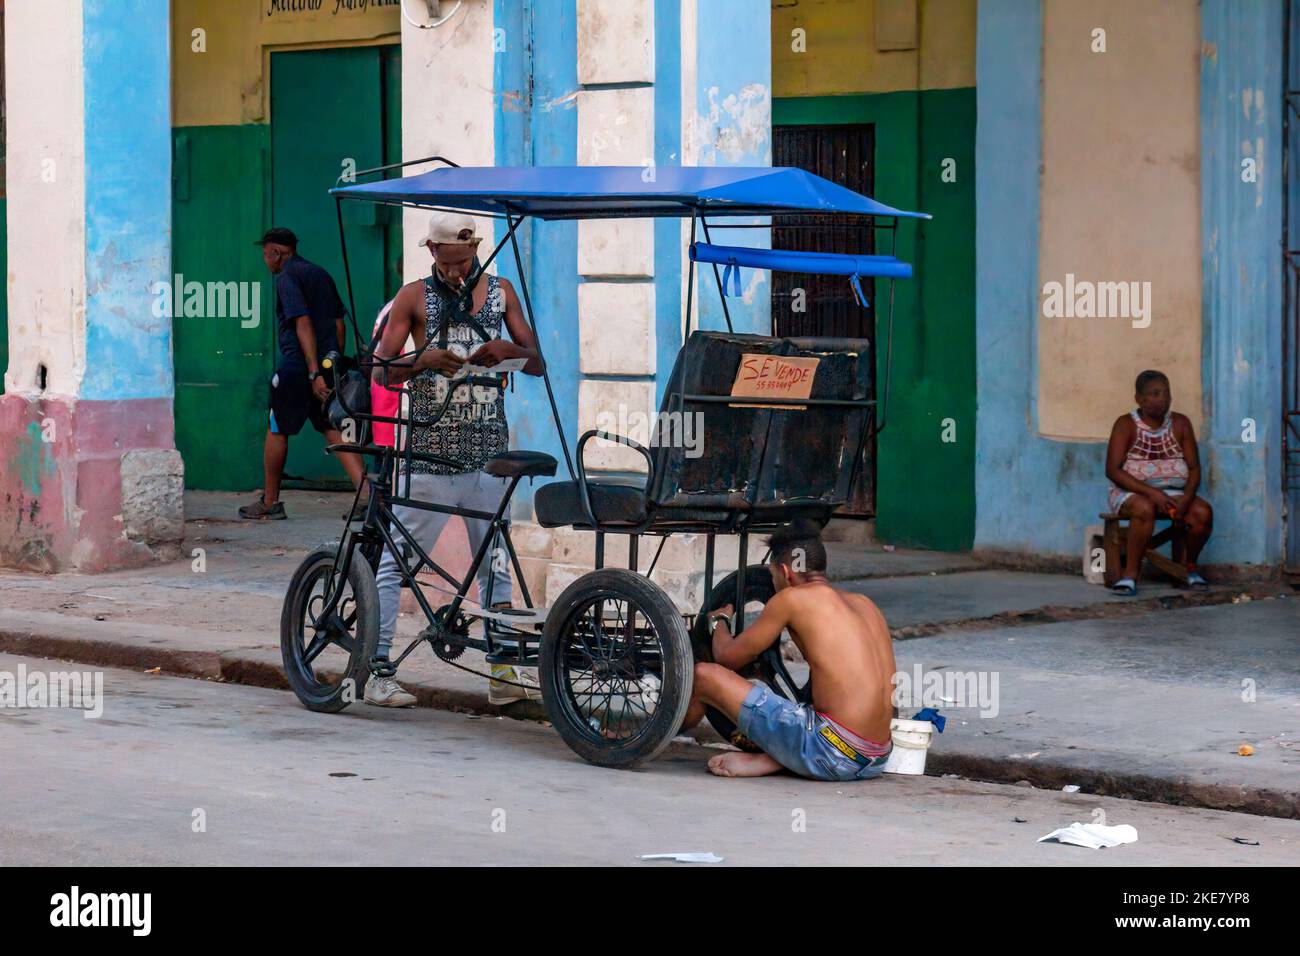 Un hombre cubano sin camisa reparando un bicitaxi o pedicab que tiene un letrero que dice 'En Venta' Foto de stock